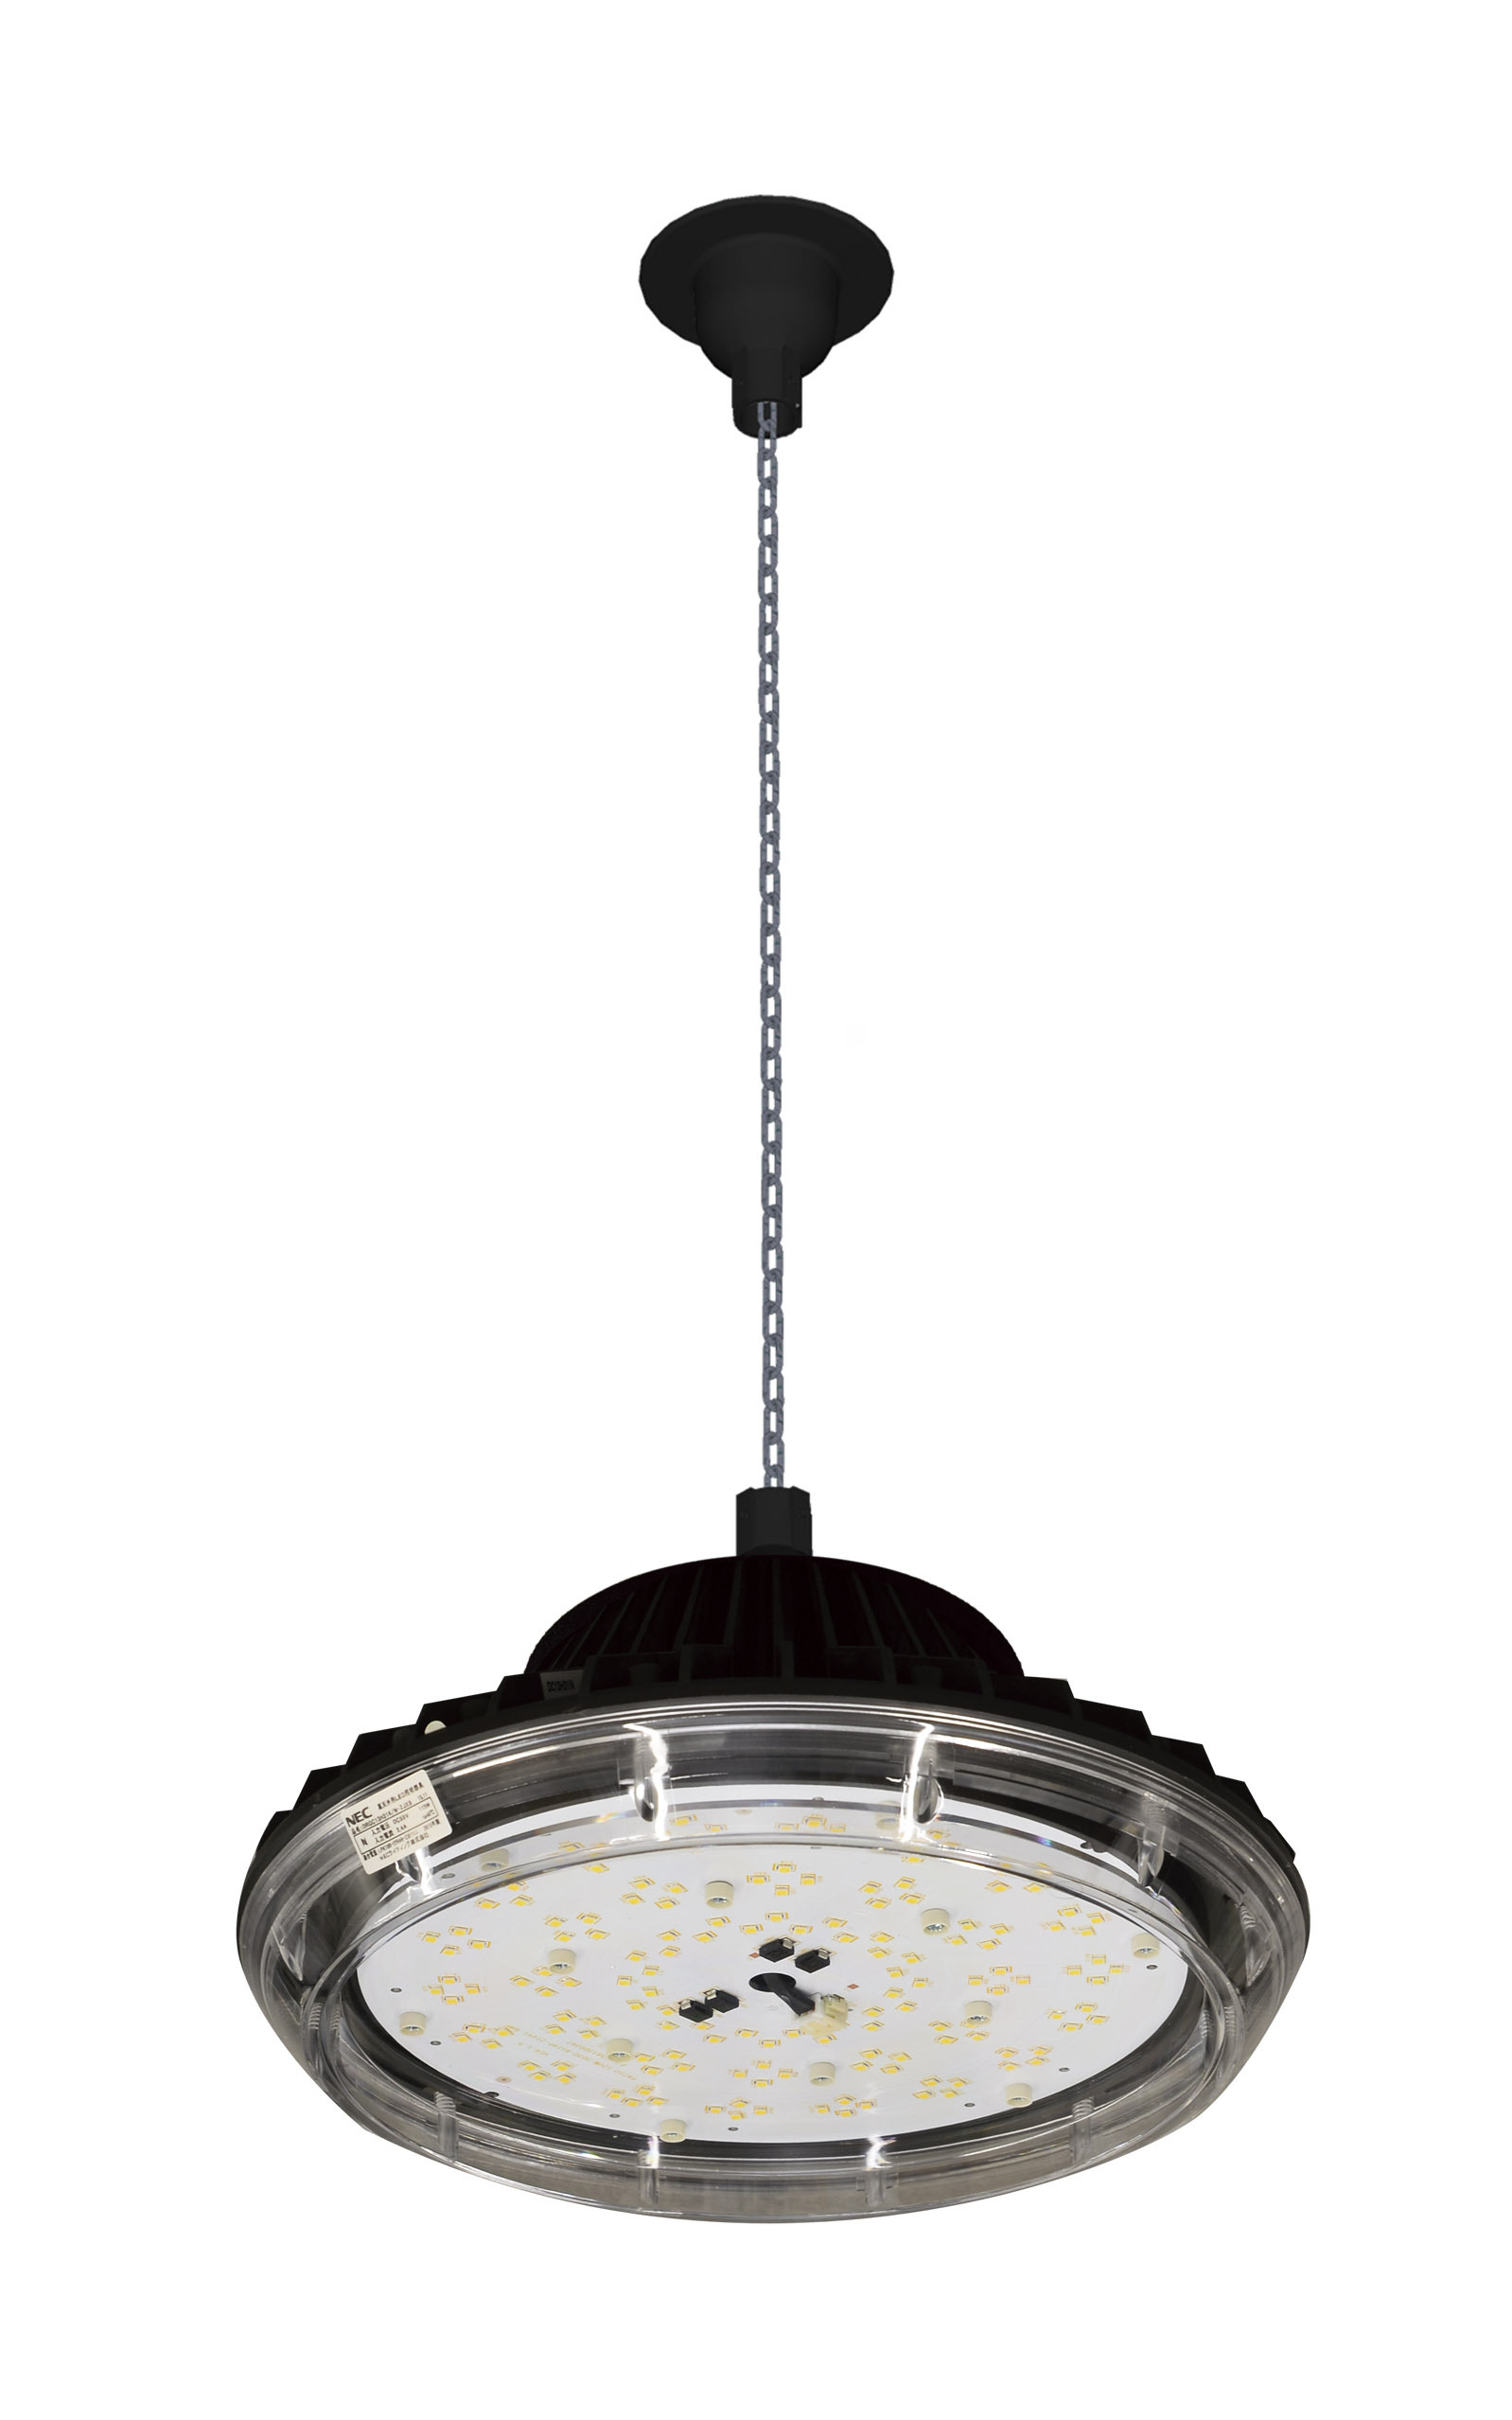 高天井用LED照明器具新製品発売 ～小型、軽量化、高演色タイプ、耐塩害